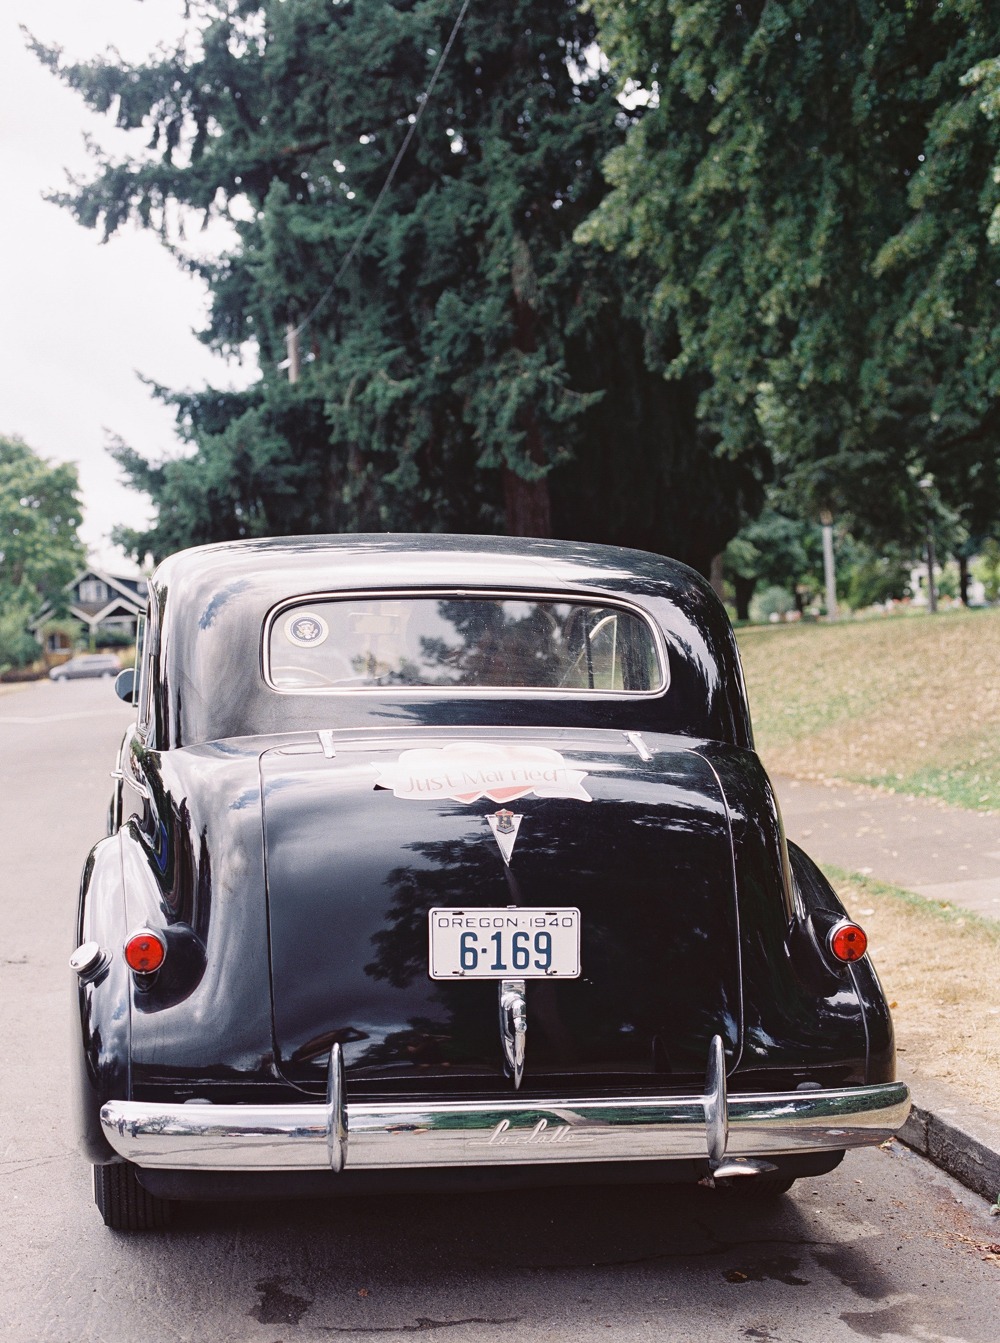 Vintage getaway car